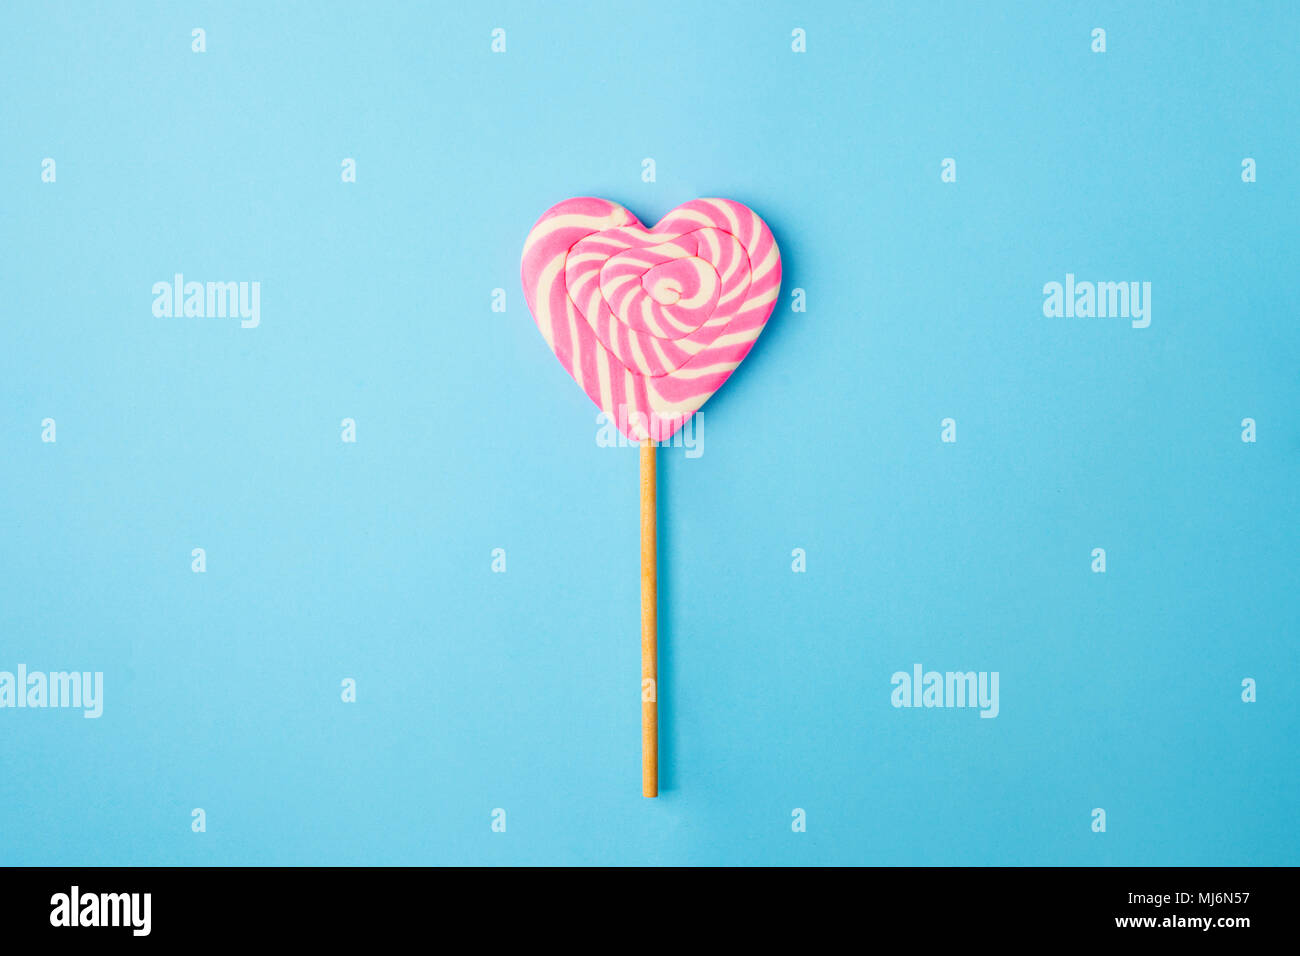 Un coeur en spirale rose et blanc sur fond bleu de sucette, télévision lay concept minimal, à la mode style pop art, isolé photo Banque D'Images